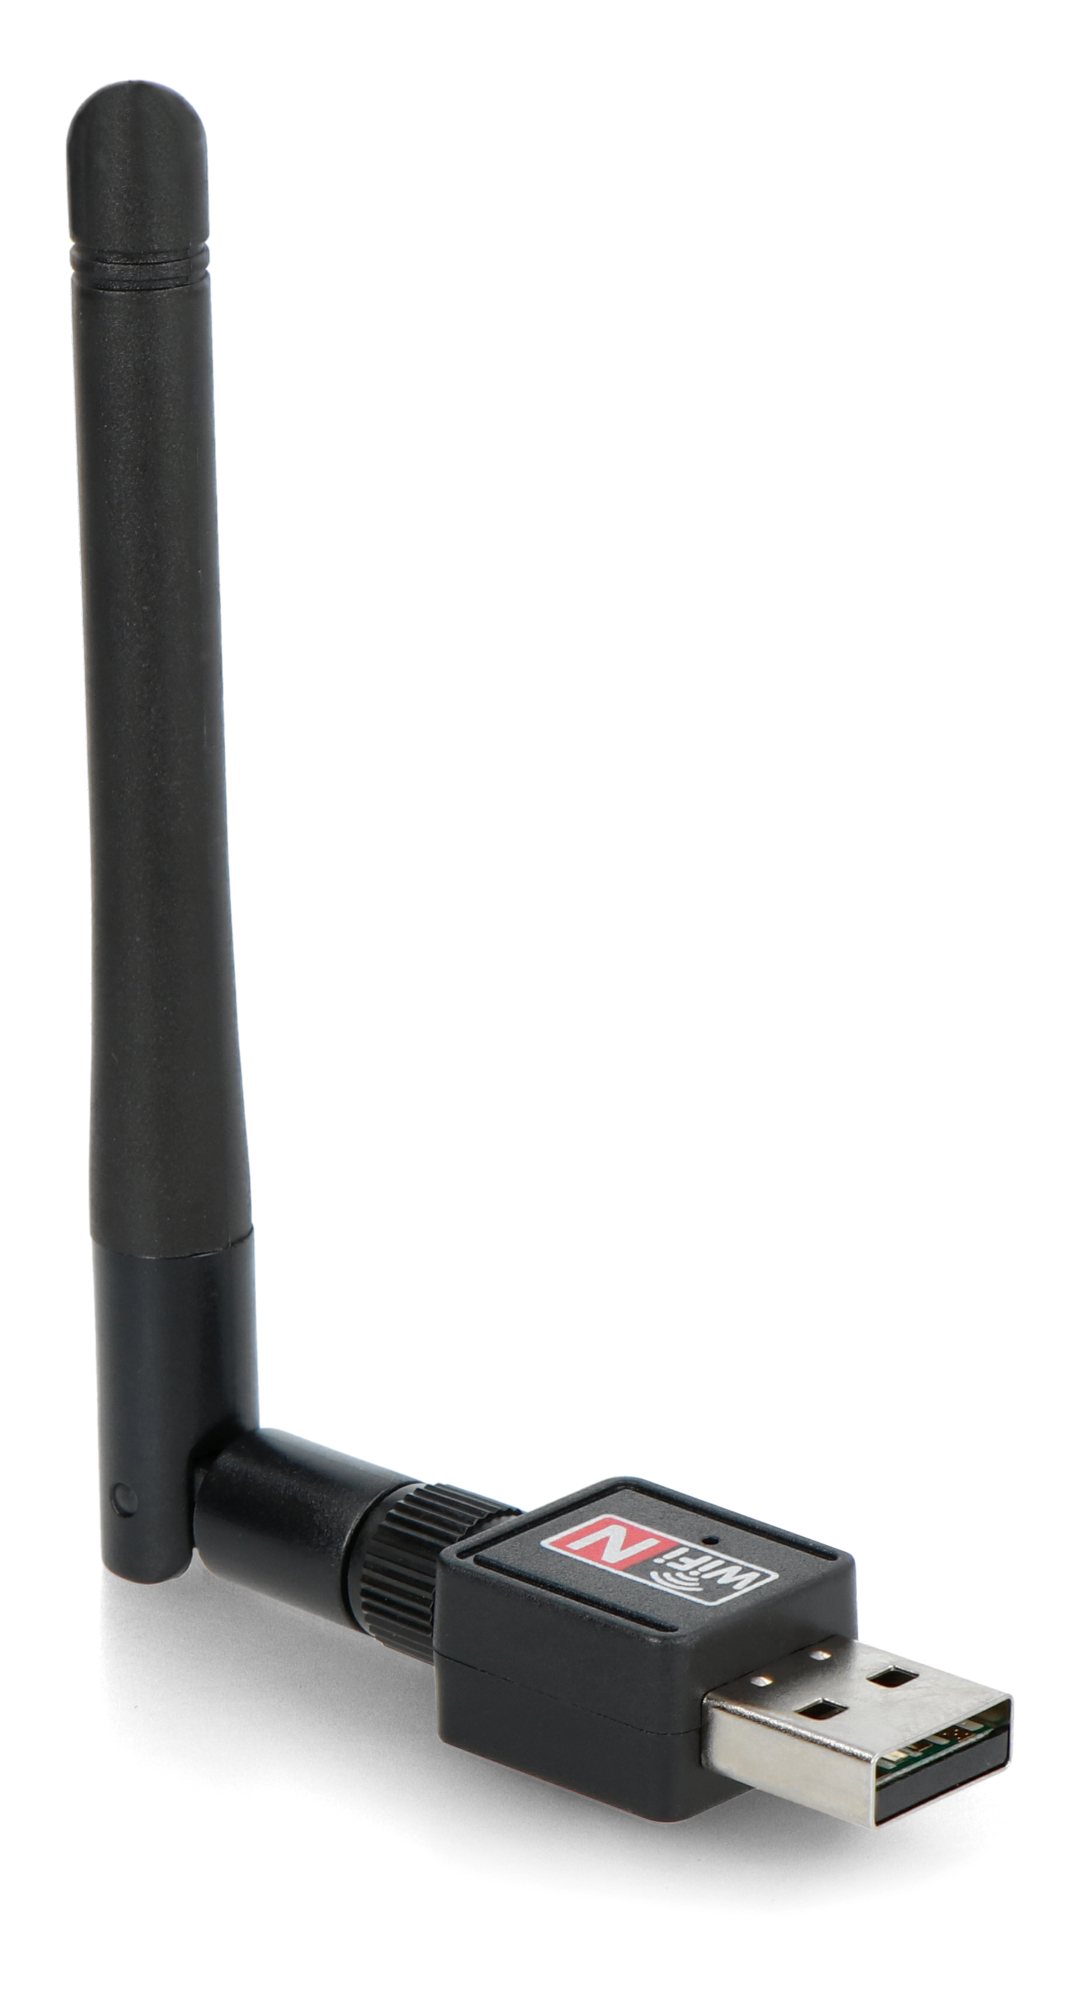 Antena wifi usb plus 600mbps